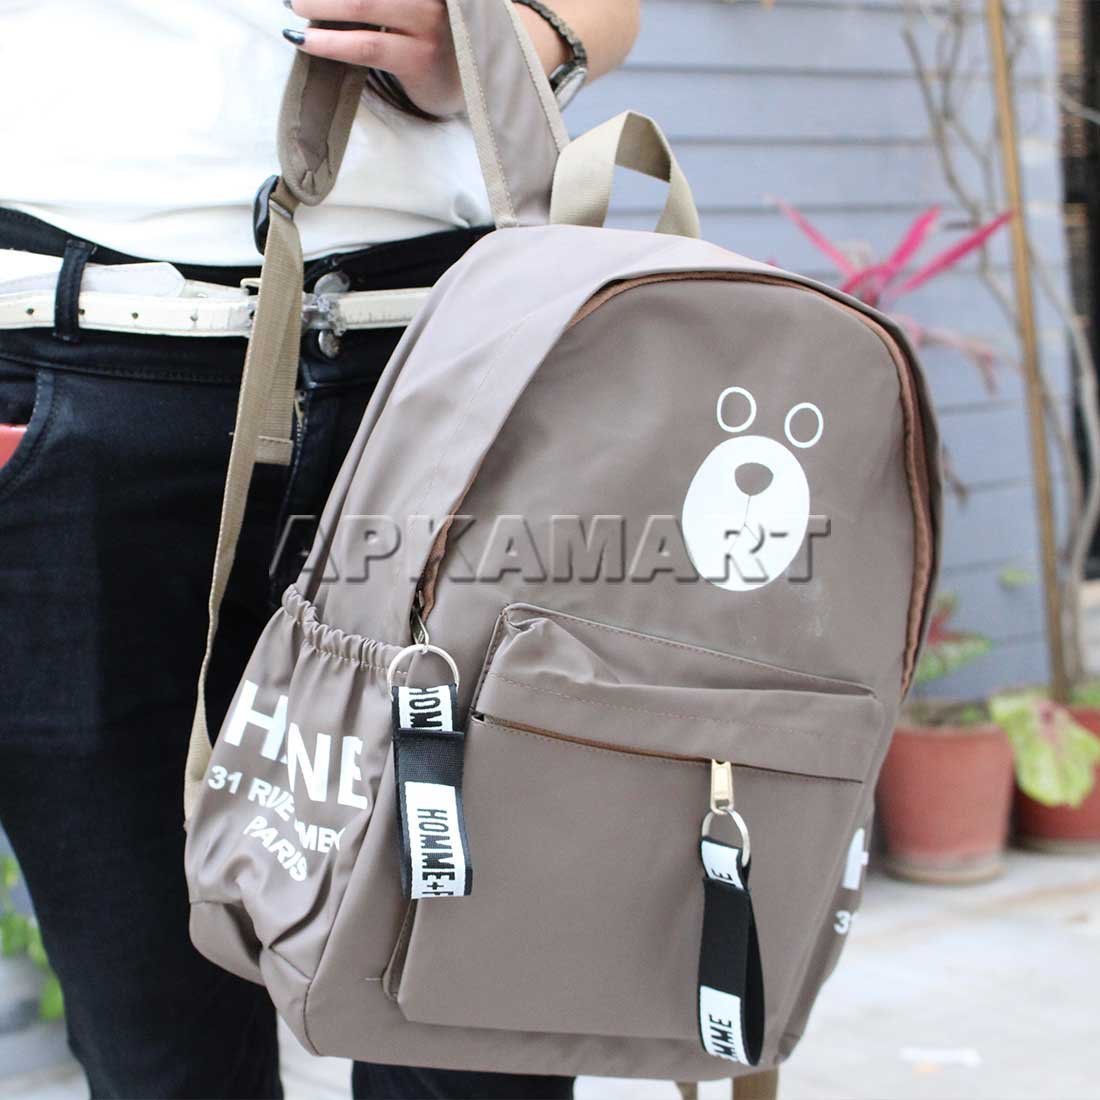 Backpack Bag | Shoulder Bags for Women - 14 Inch - ApkaMart